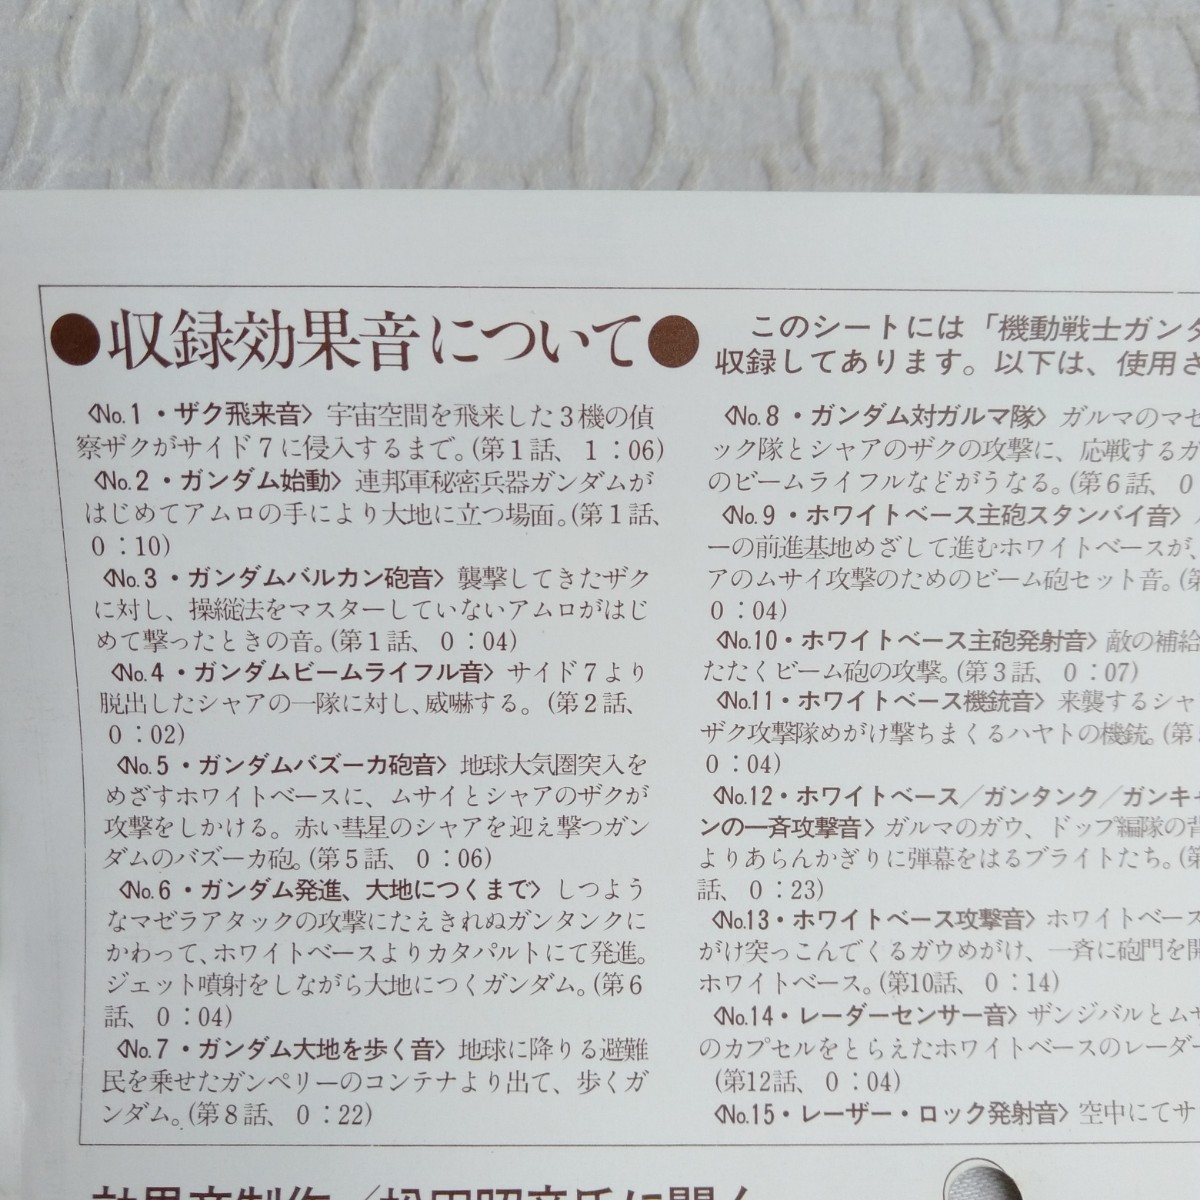 ya287 MOBILE SUIT GUNDAM SPECIAL SOUND EFFECT DISK Mobile Suit Gundam эффект звук сборник запись LP EP какой листов тоже единая стоимость доставки 1,000 иен воспроизведение не проверка 